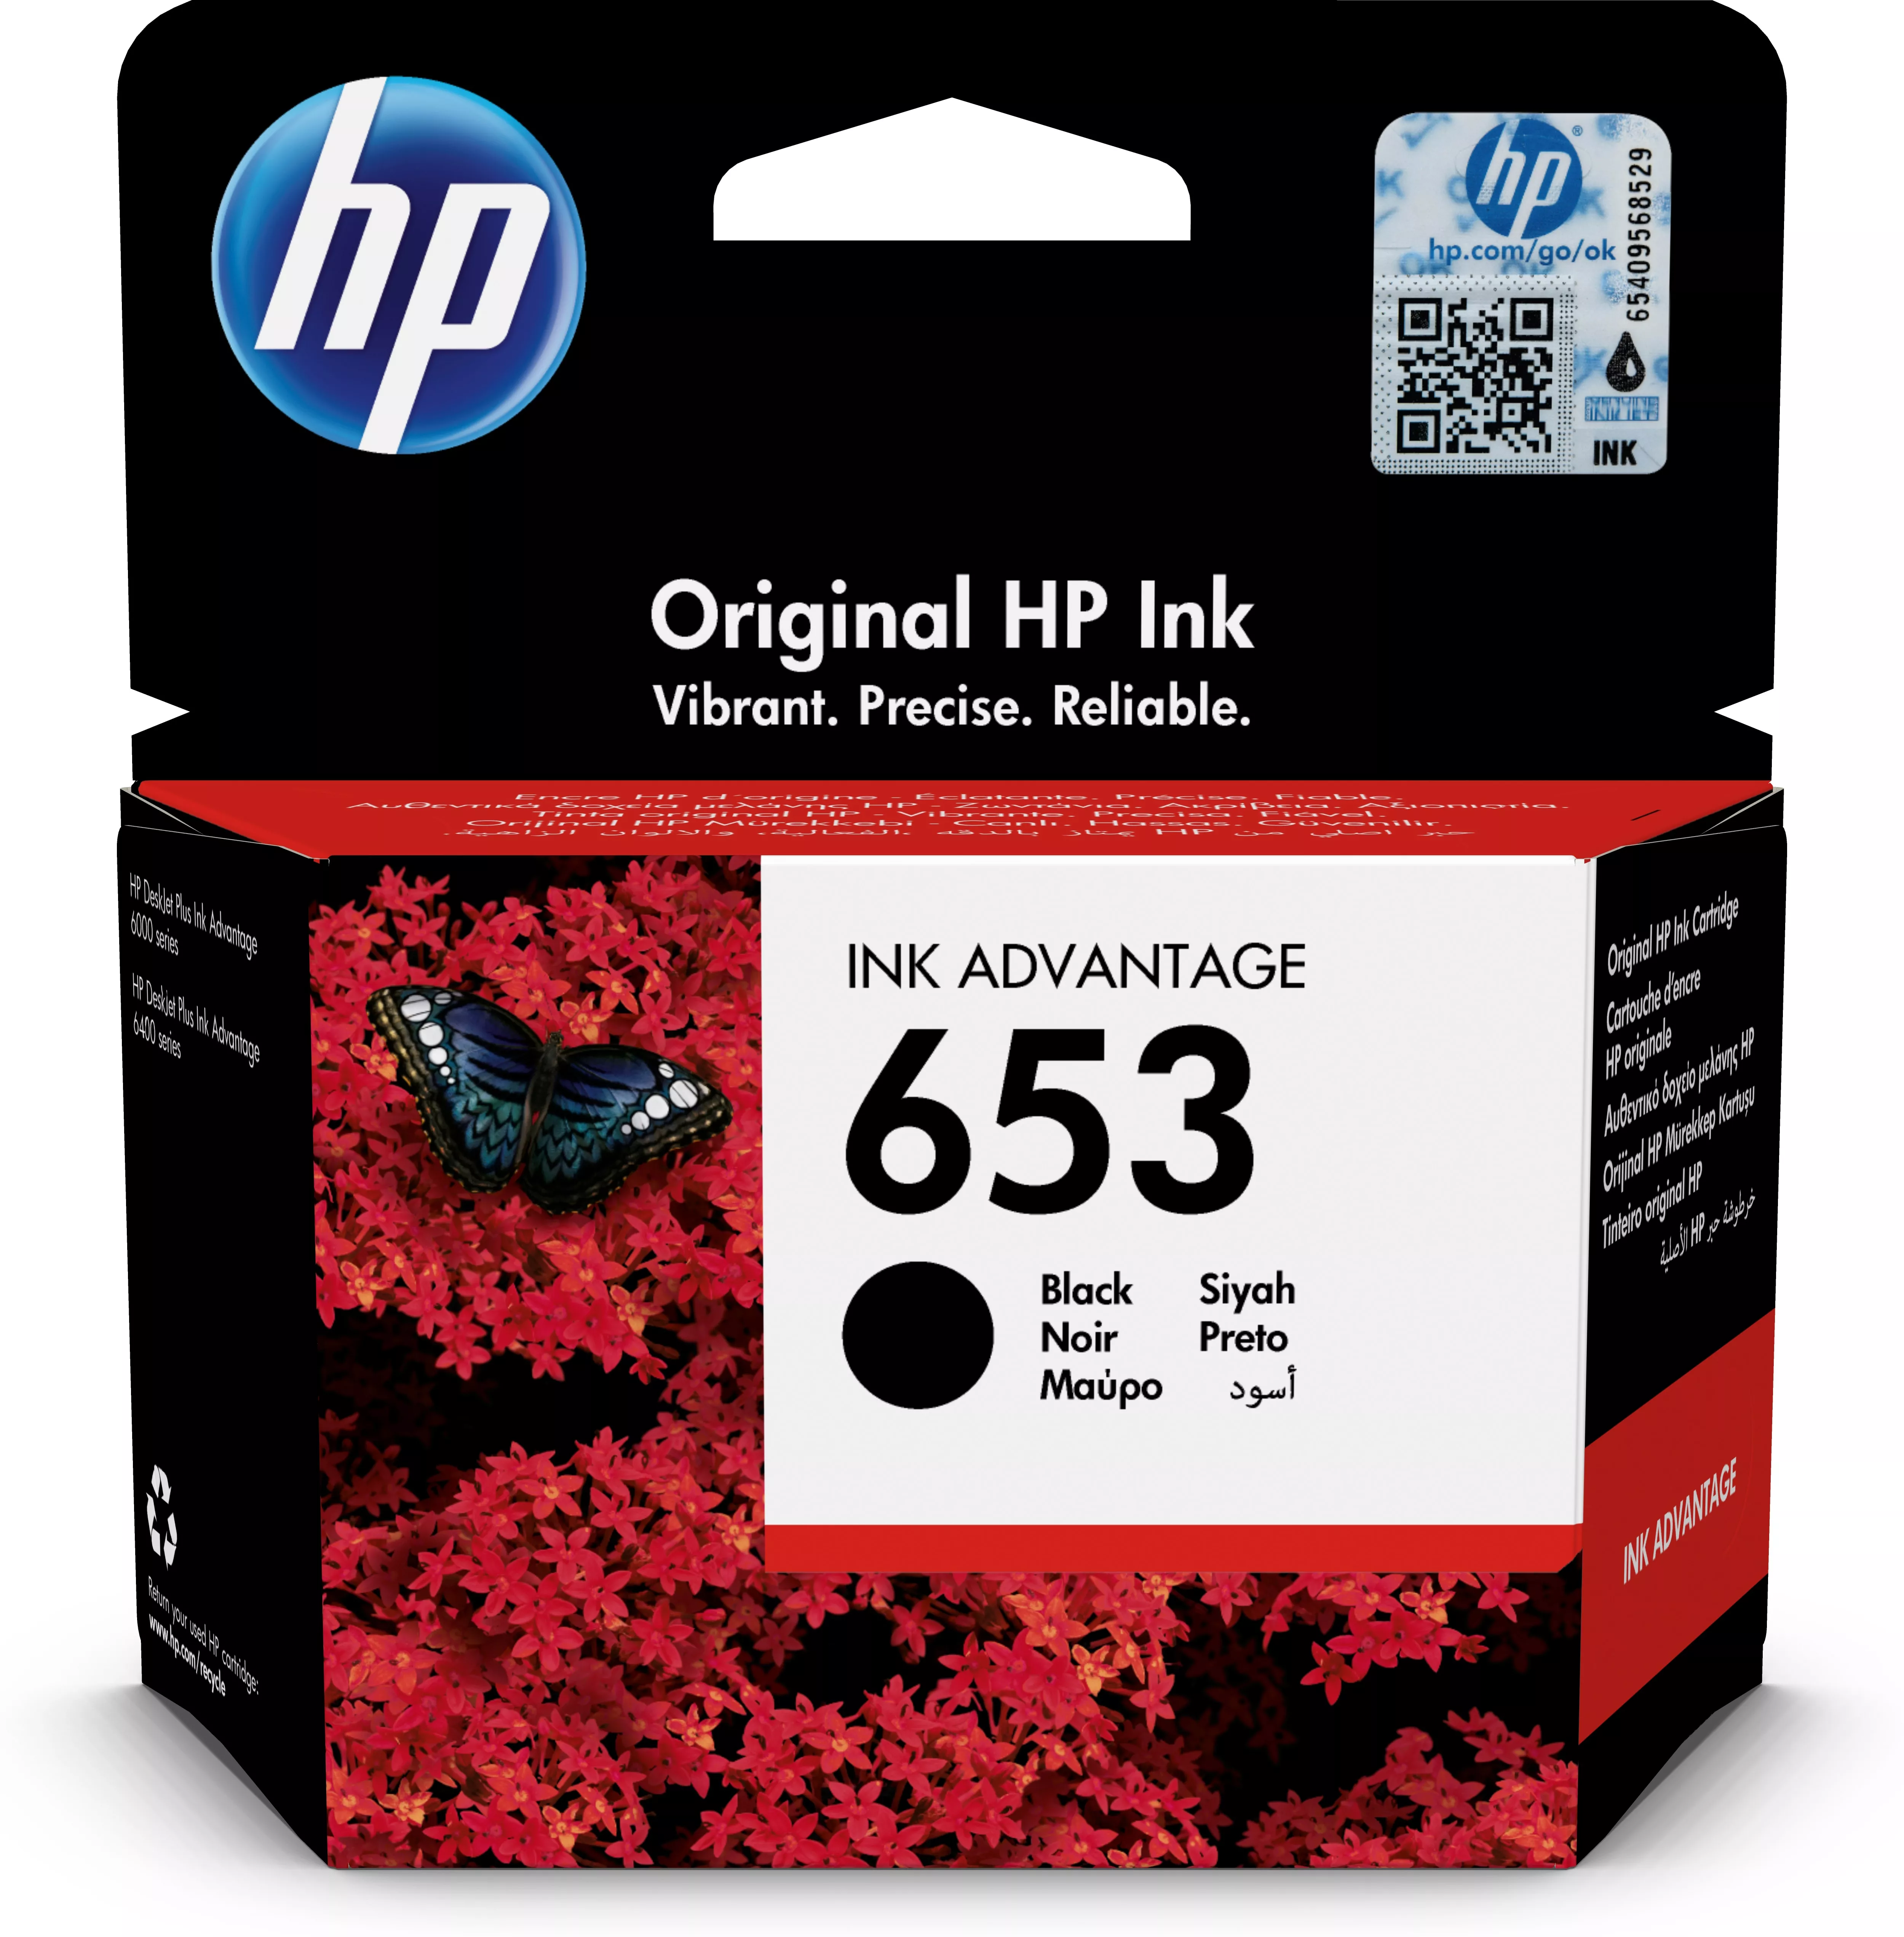 Achat HP 653 Black Original Ink Advantage Cartridge et autres produits de la marque HP